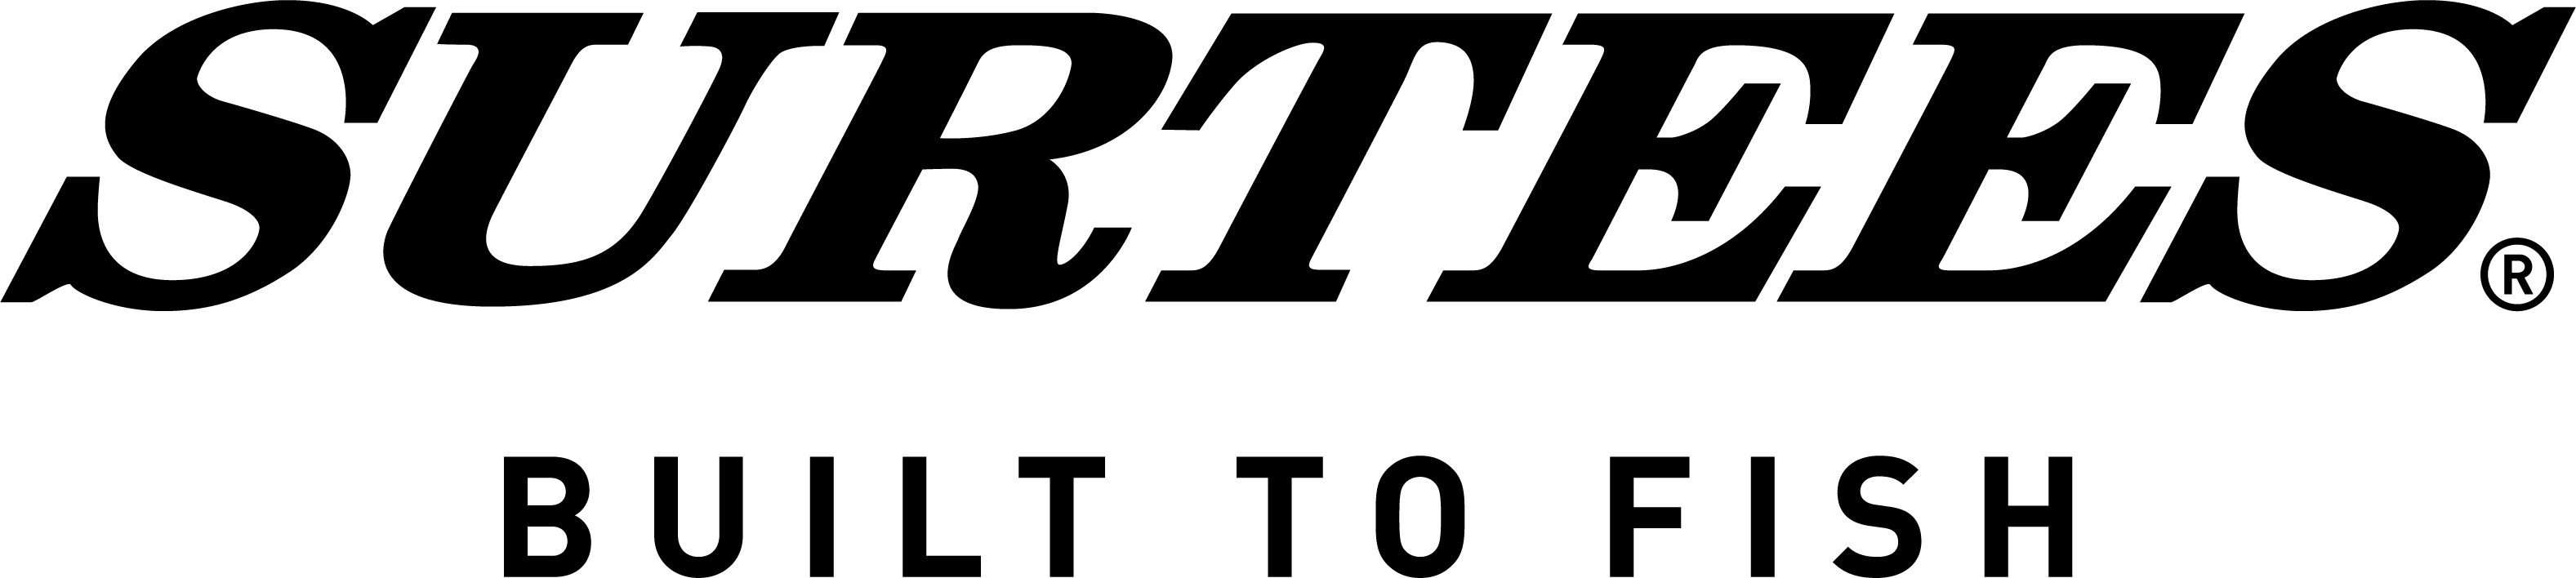 Surtees Range logo